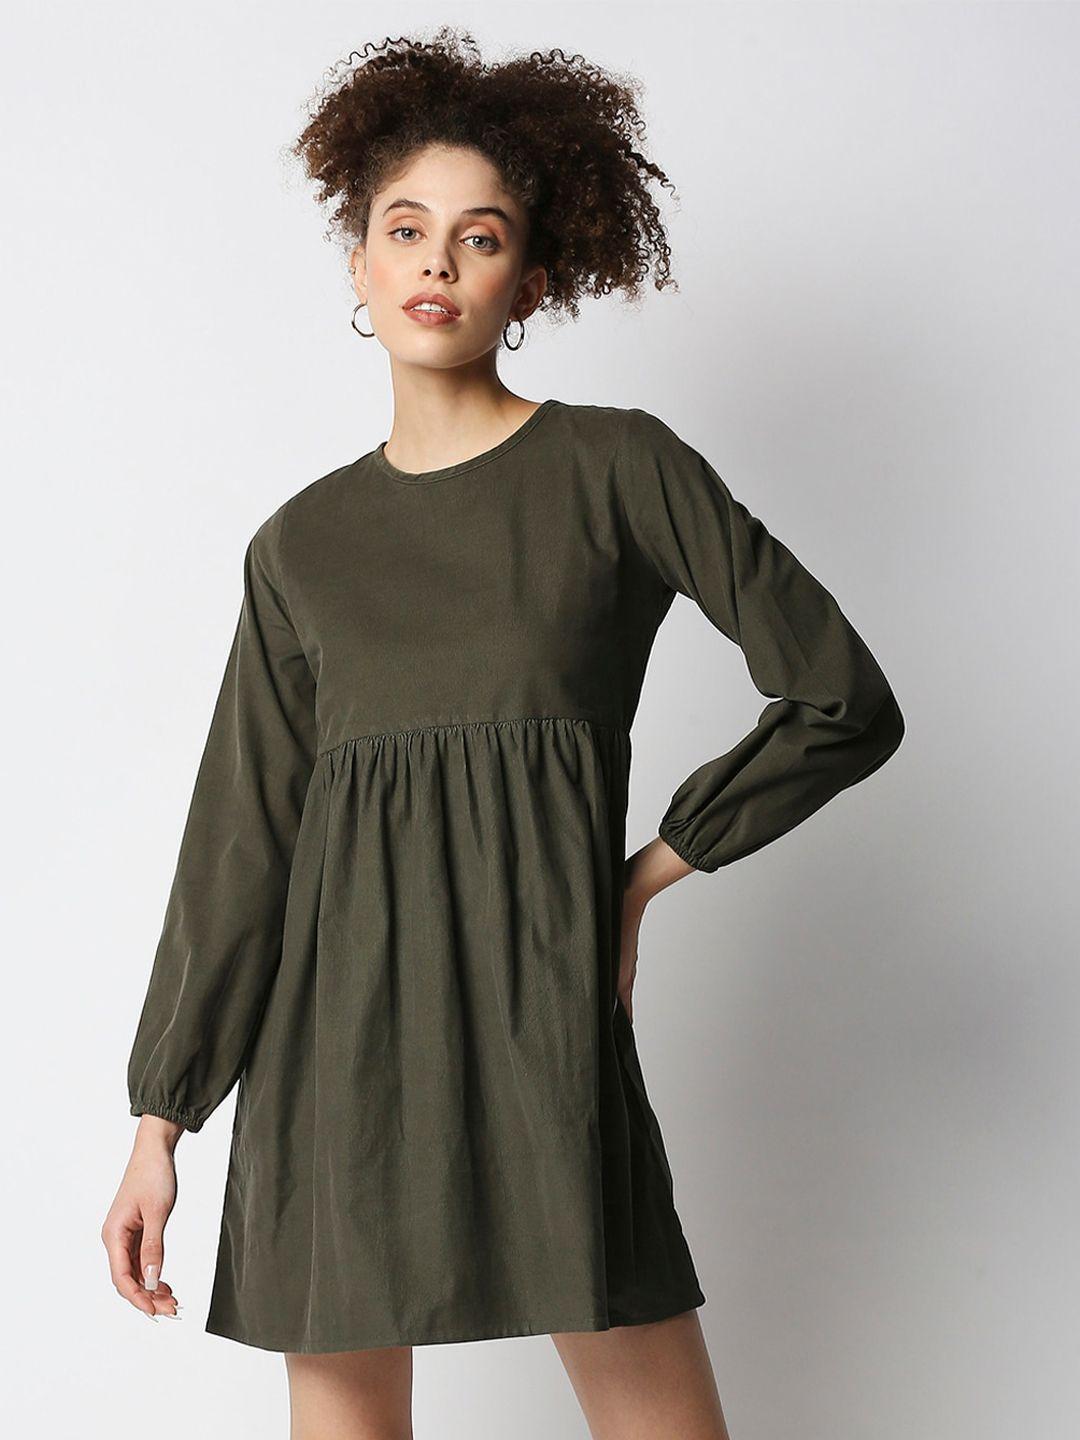 disrupt-women-olive-green-a-line-mini-dress